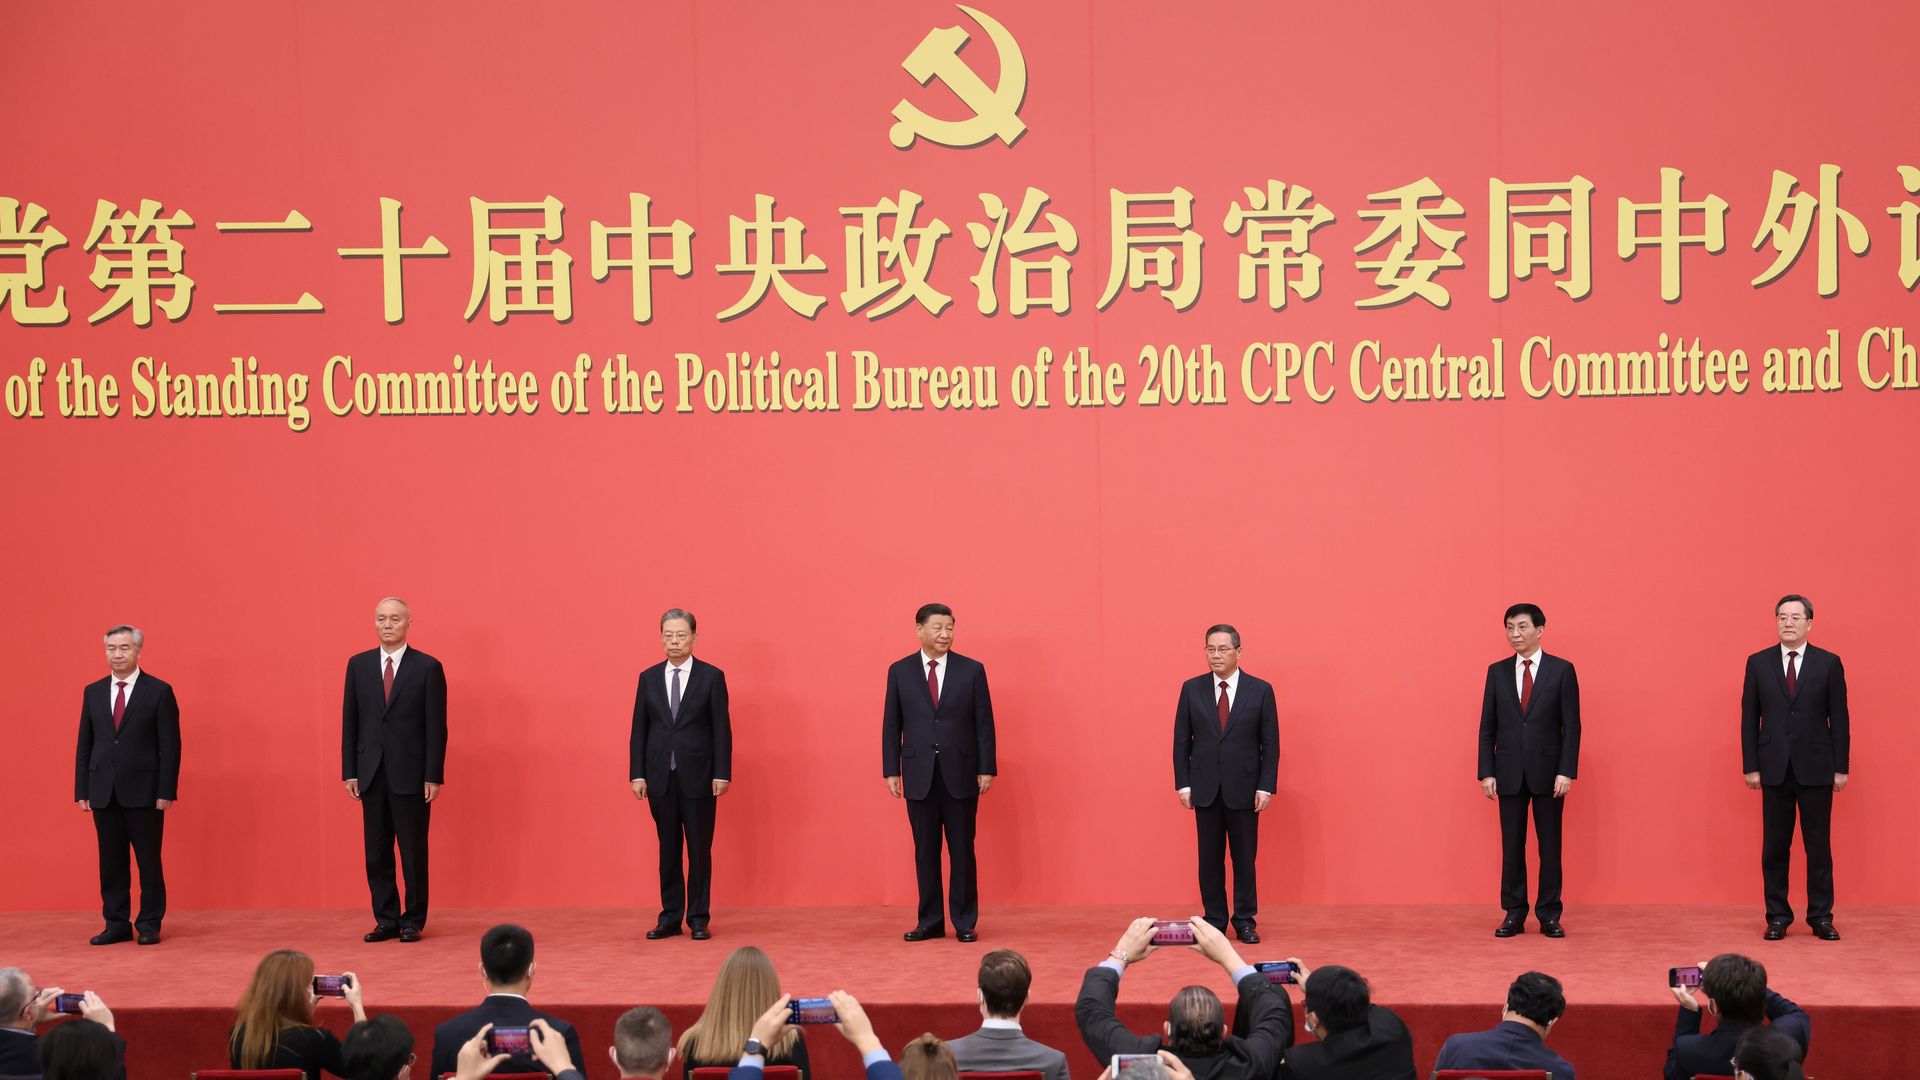  (L-R)Li Xi, Cai Qi, Zhao Leji, Xi Jinping ,Li Qiang, Wang Huning and Ding Xuexiang of the standing committee of the 20th CPC Central Committee in Beijing, China.